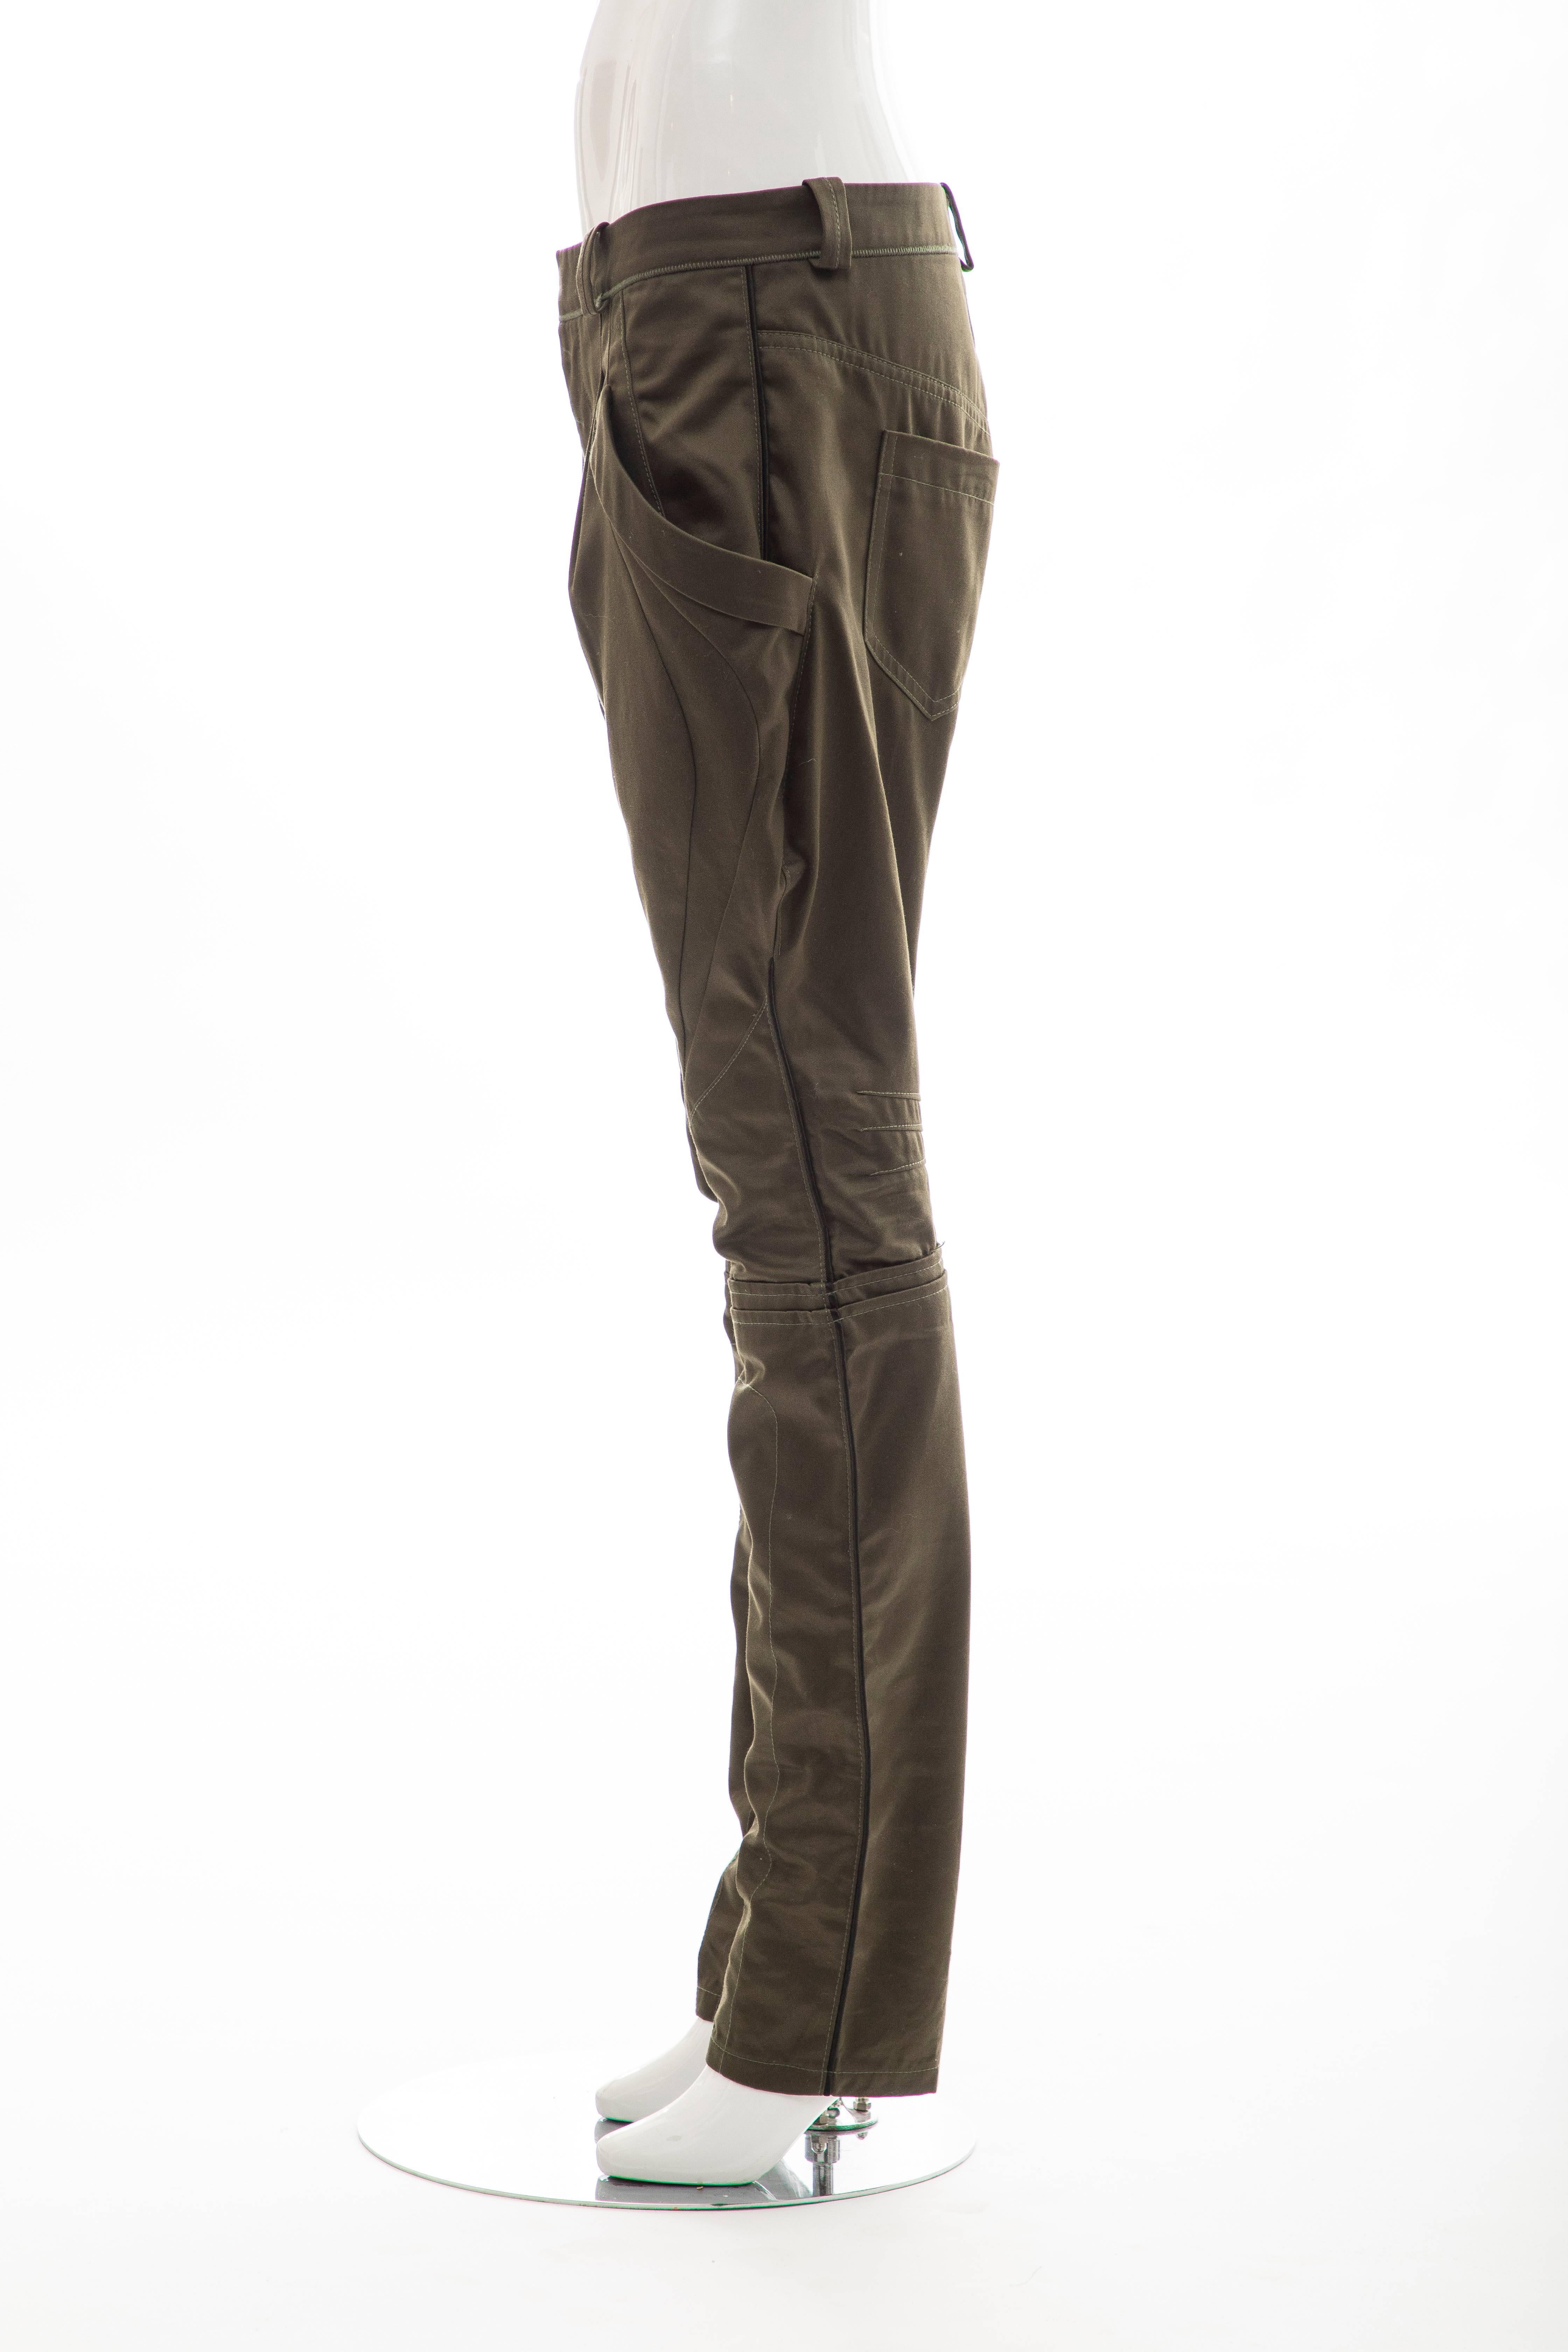 Nicolas Ghesquière for Balenciaga Runway Cotton Suede Pants, Fall 2007 For Sale 1